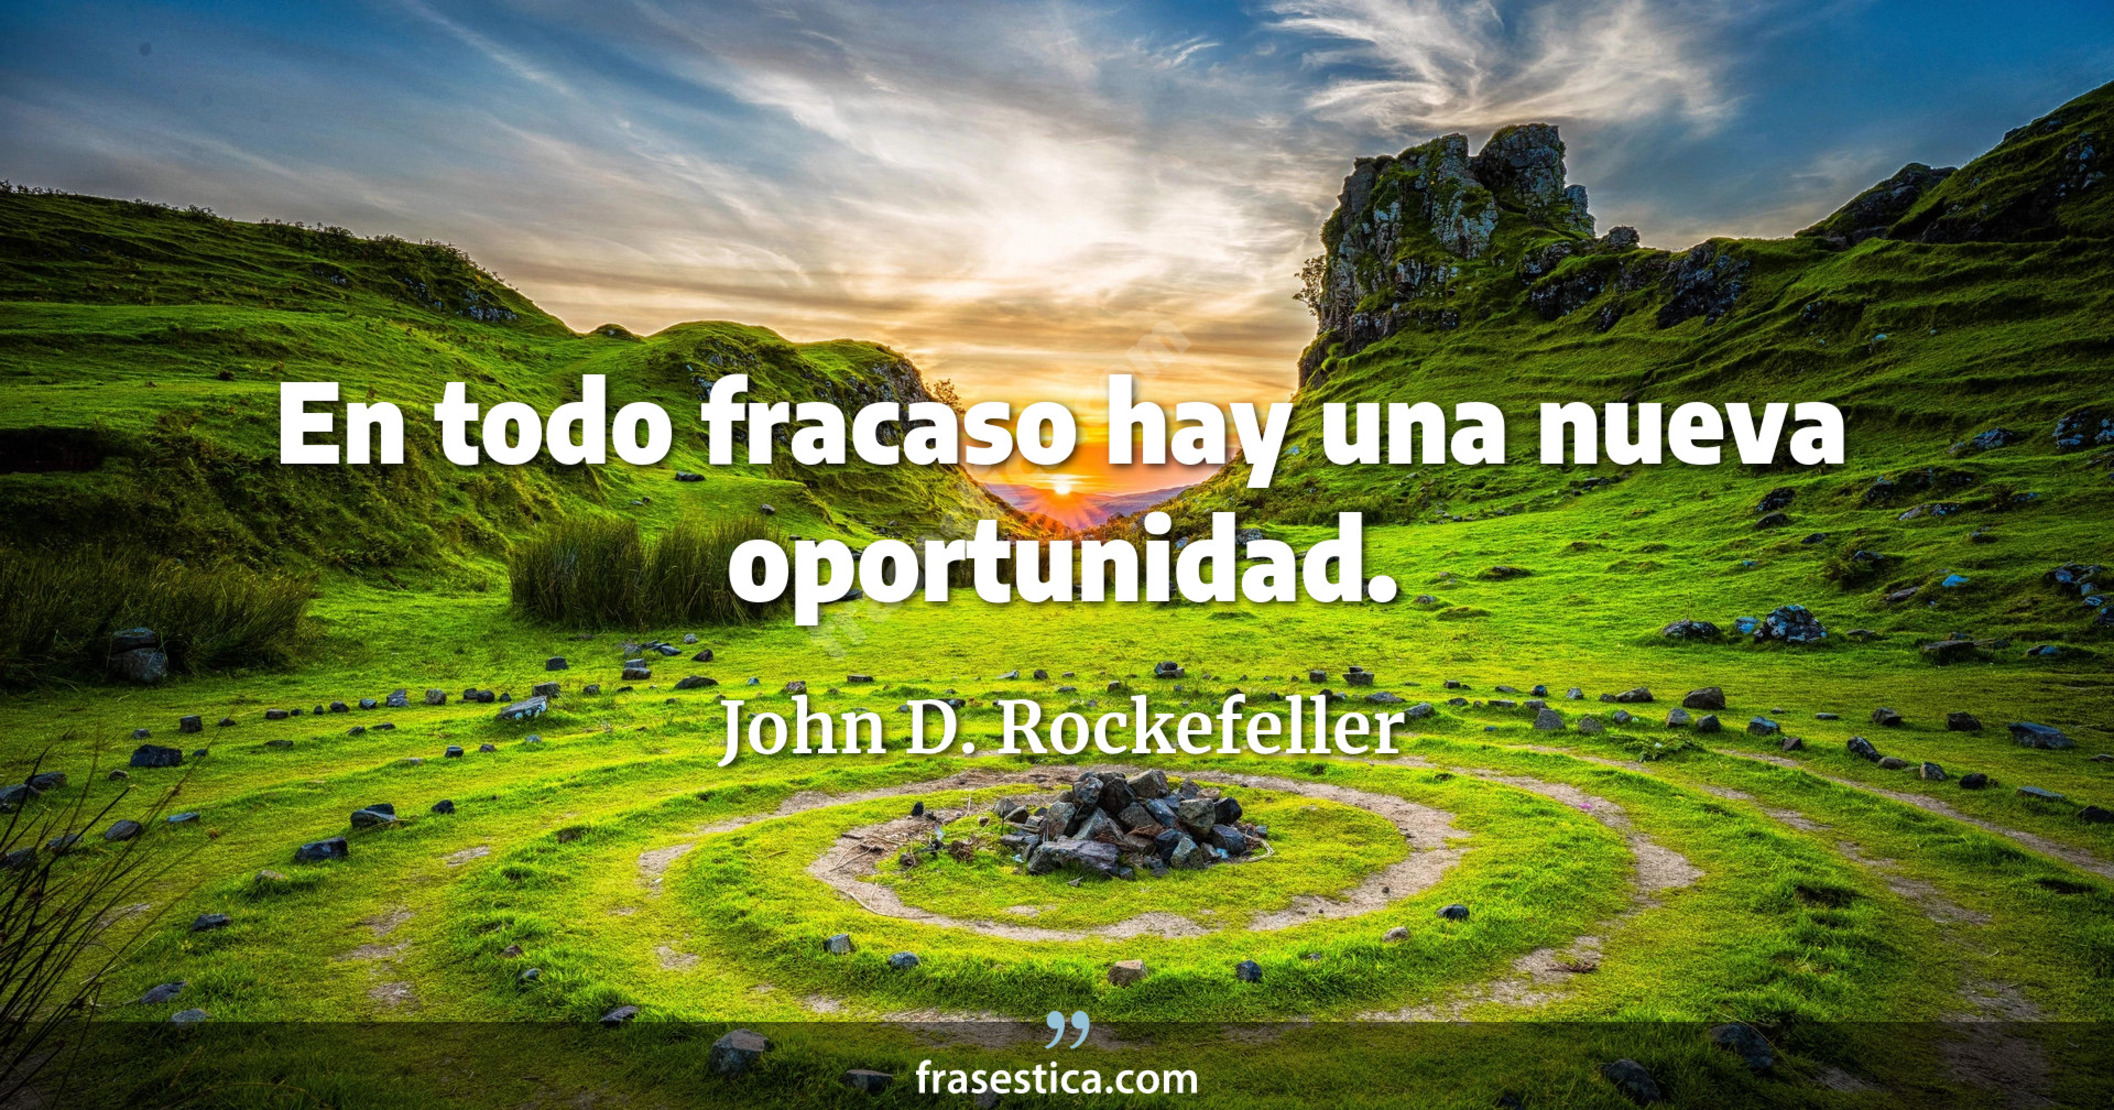 En todo fracaso hay una nueva oportunidad. - John D. Rockefeller